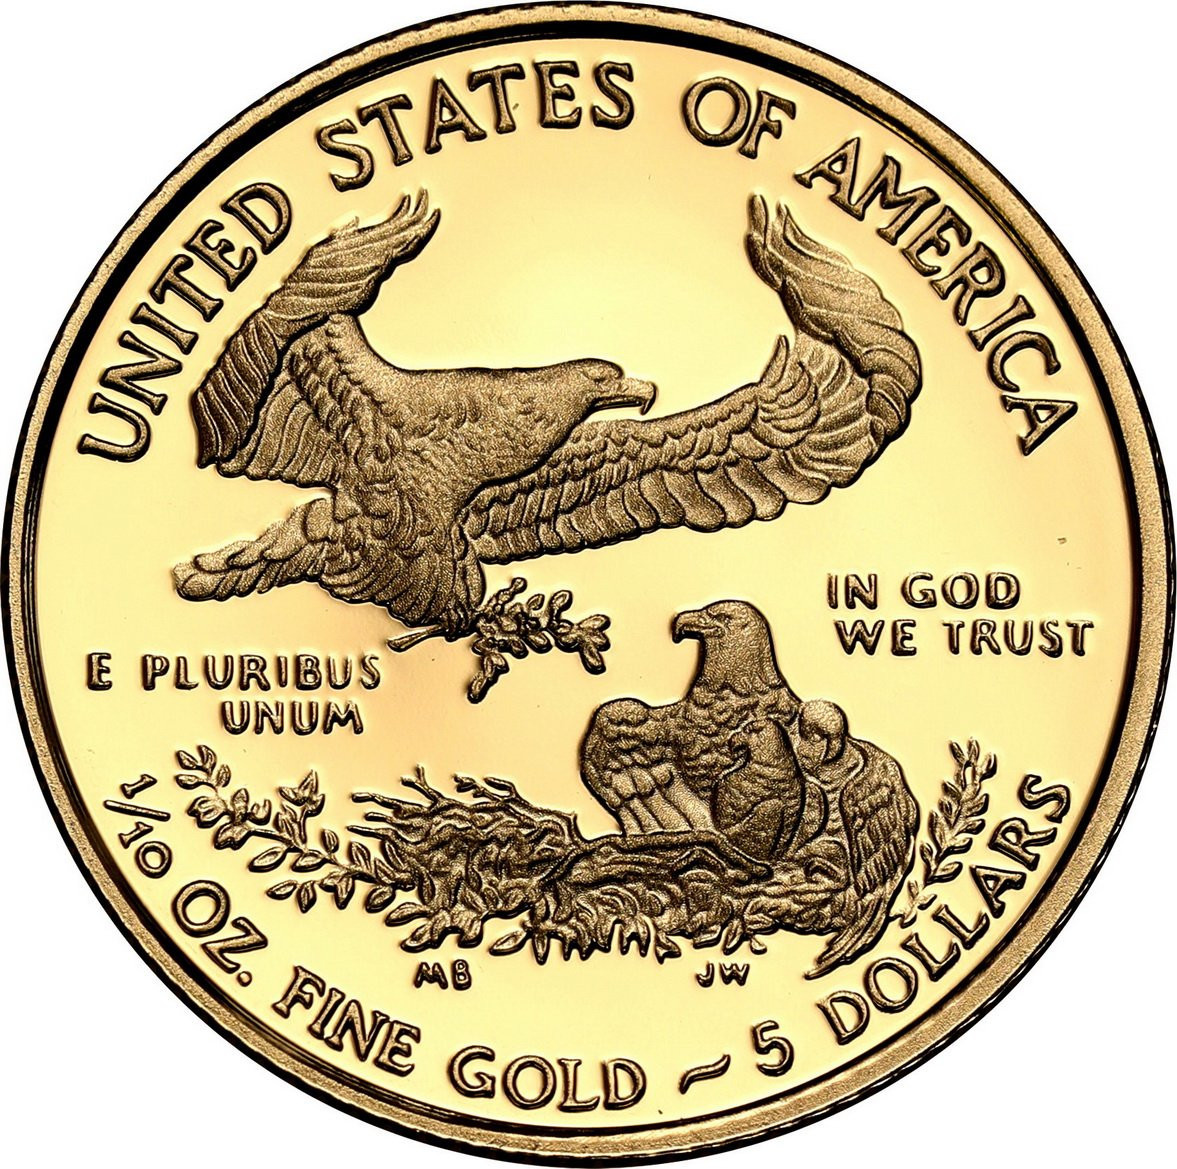 USA. Złote 5 $ dolarów 2019 Orzeł (Eagle) - LUSTRZANY – 1/10 uncji złota